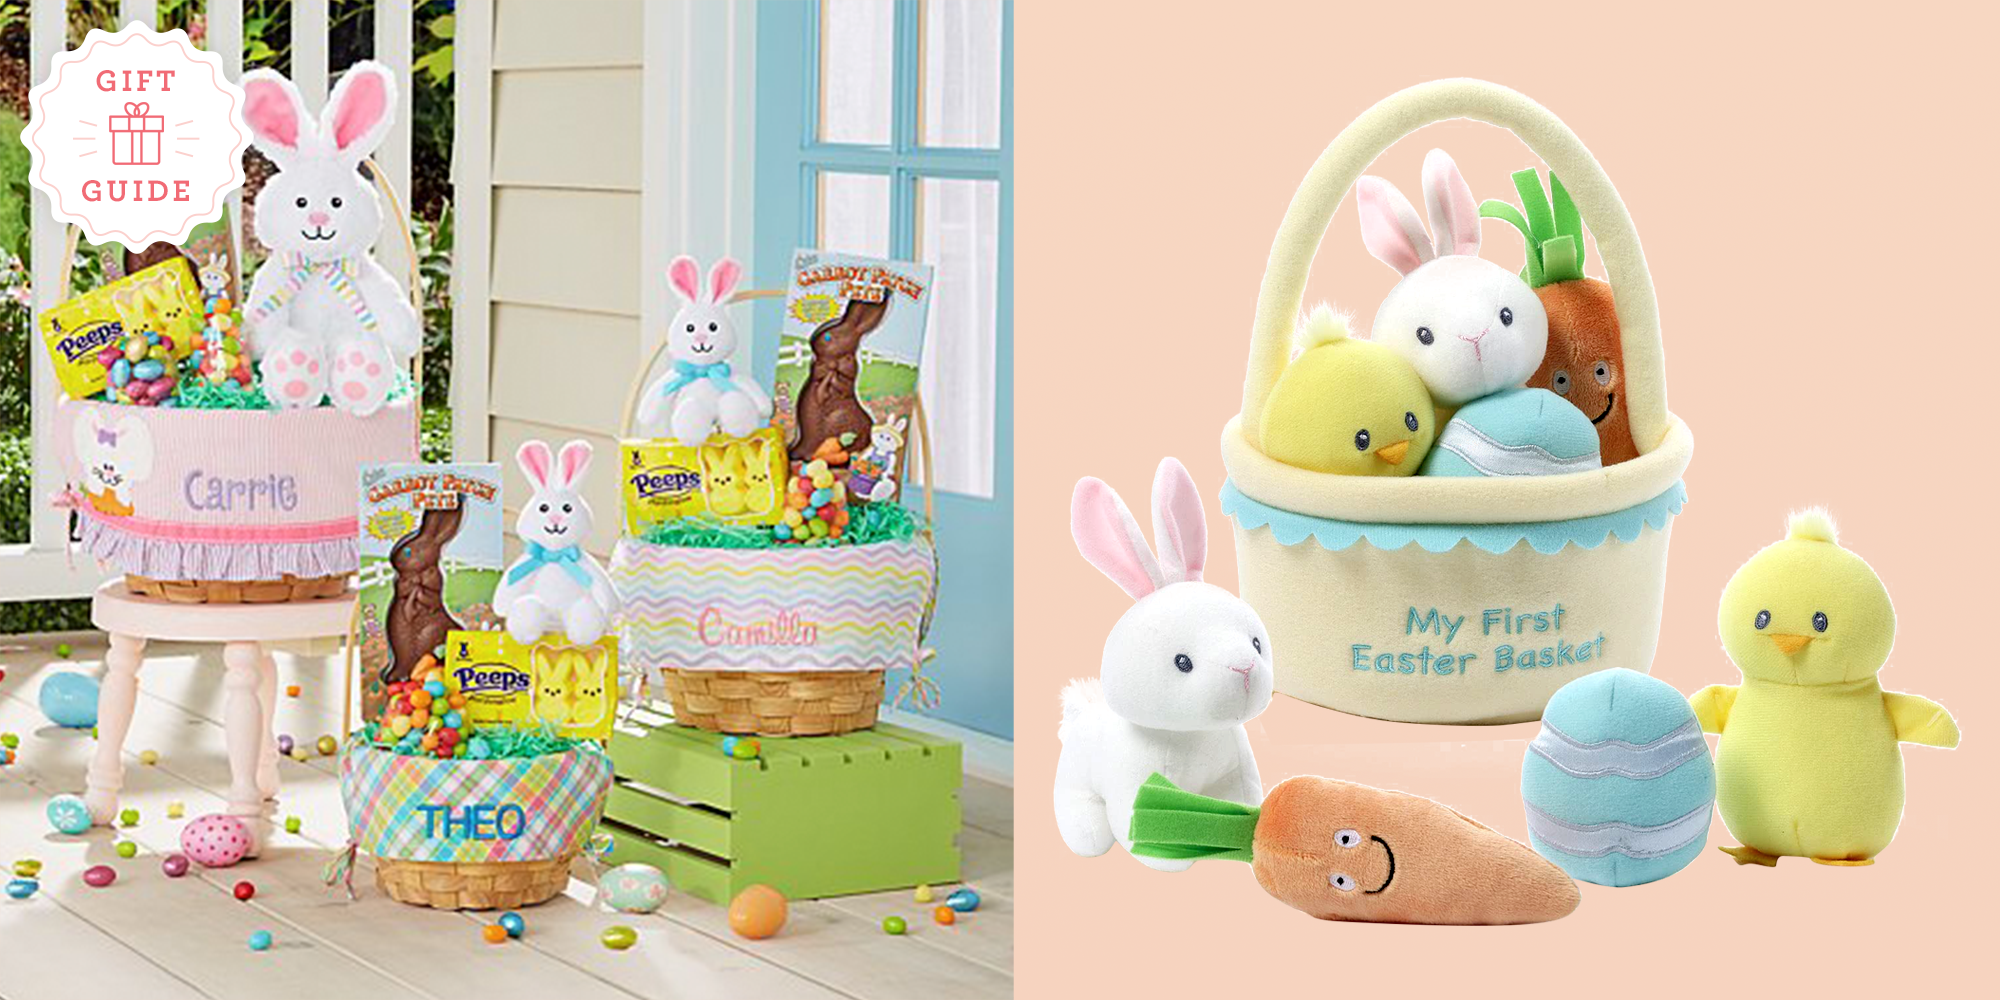 Pink Easter Basket for Kids,Seersucker Easter Bunny Basket for Girls Boys Easter Egg Hunts,Easter Gift Goodie Bags,Easter Kids Party Favor Supplies 